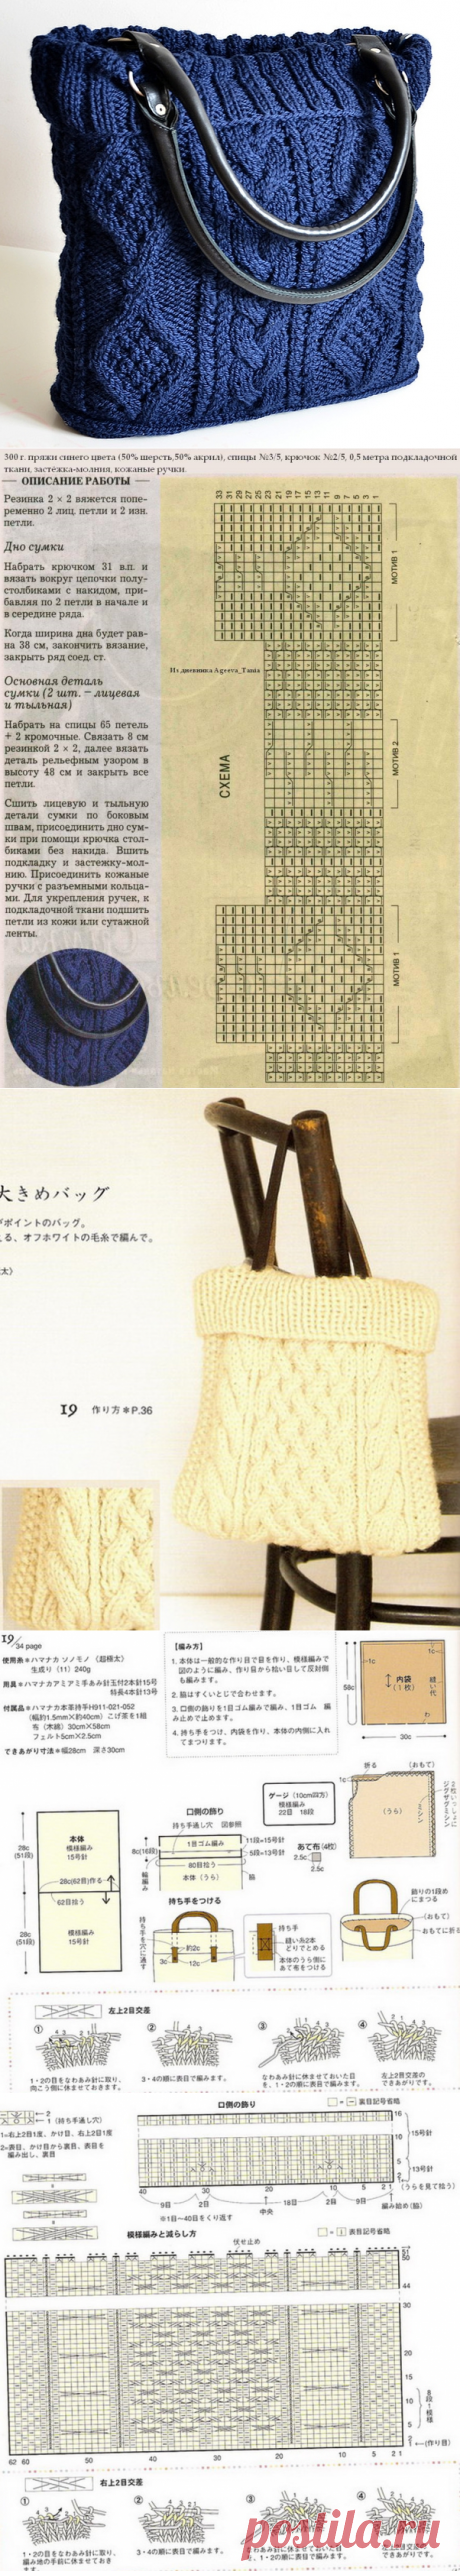 tricot - Le monde-creatif